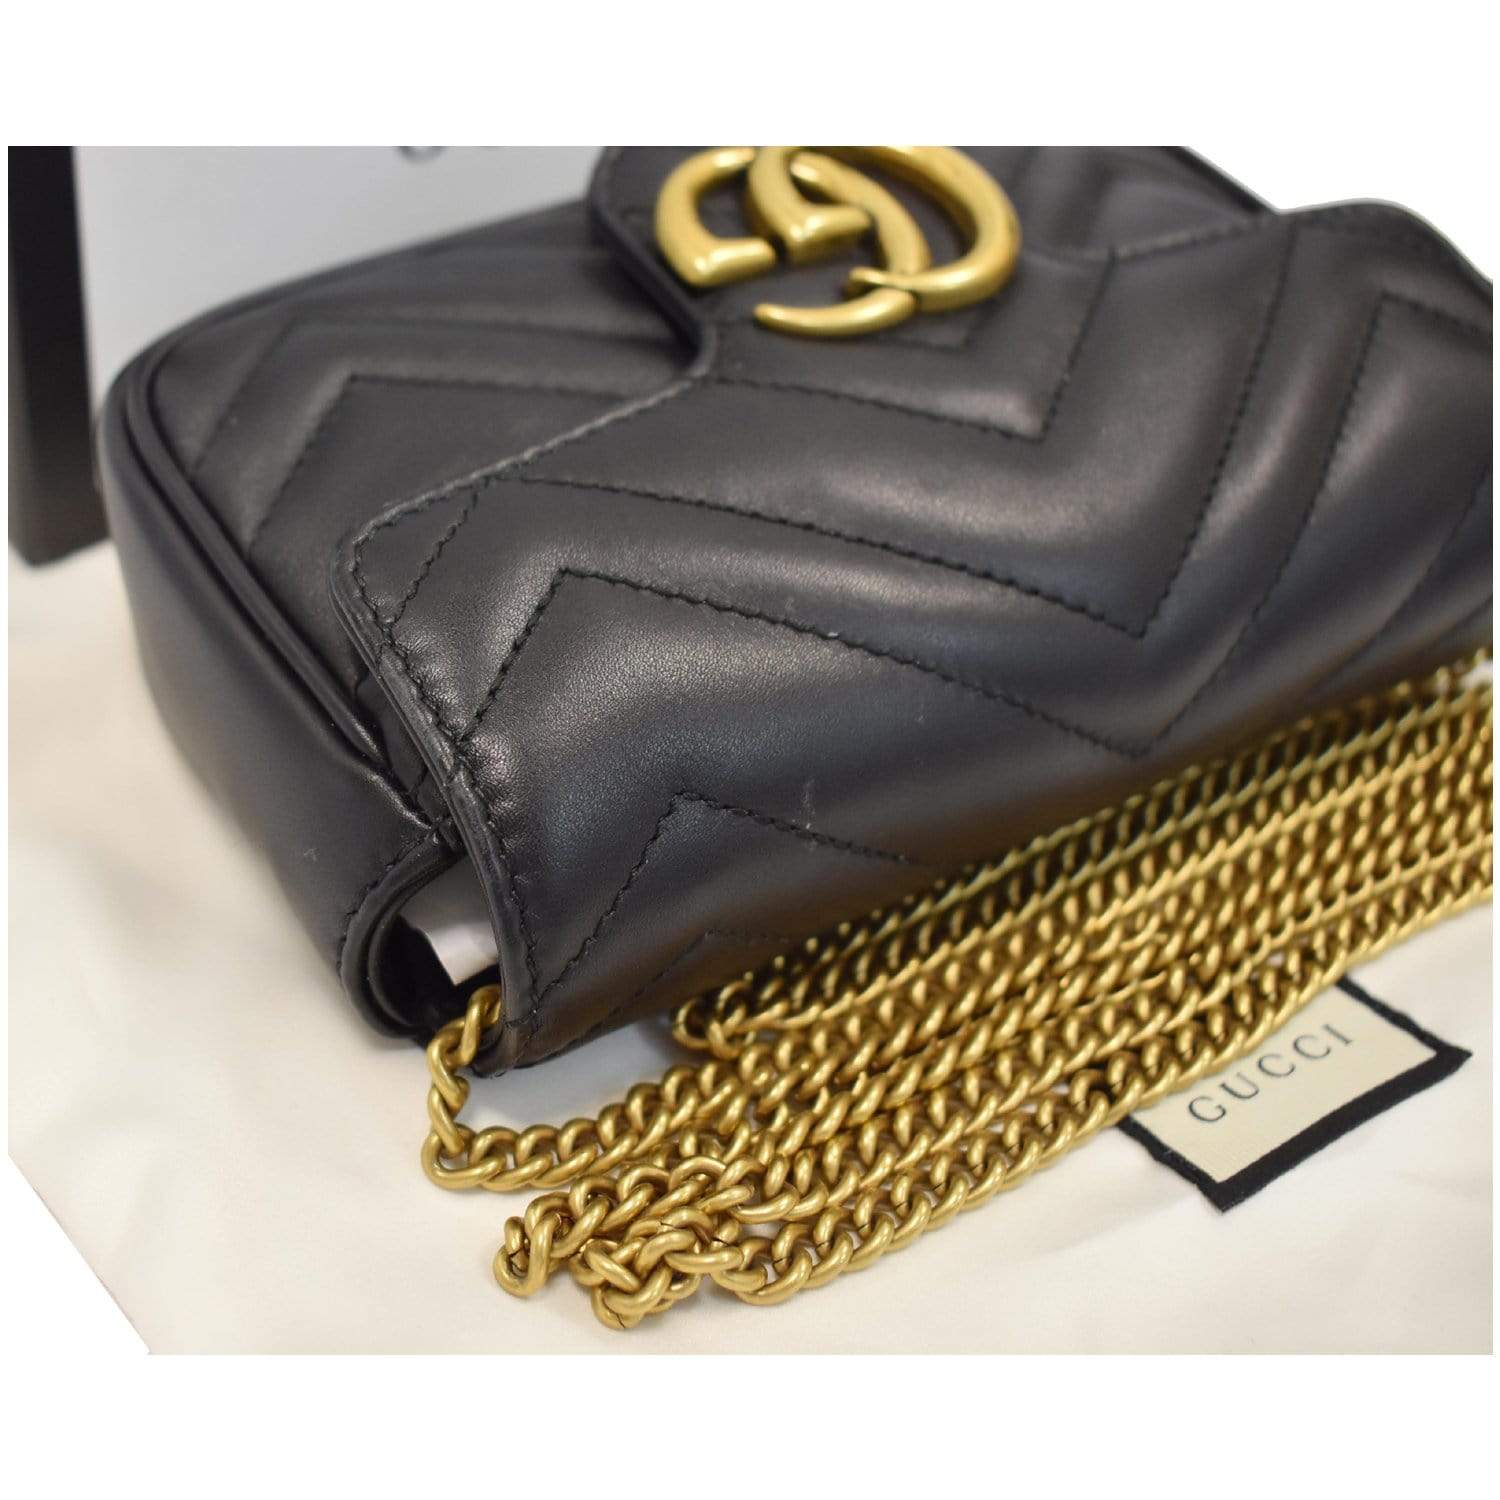 Gucci GG Marmont Super Mini Leather Crossbody Bag Black